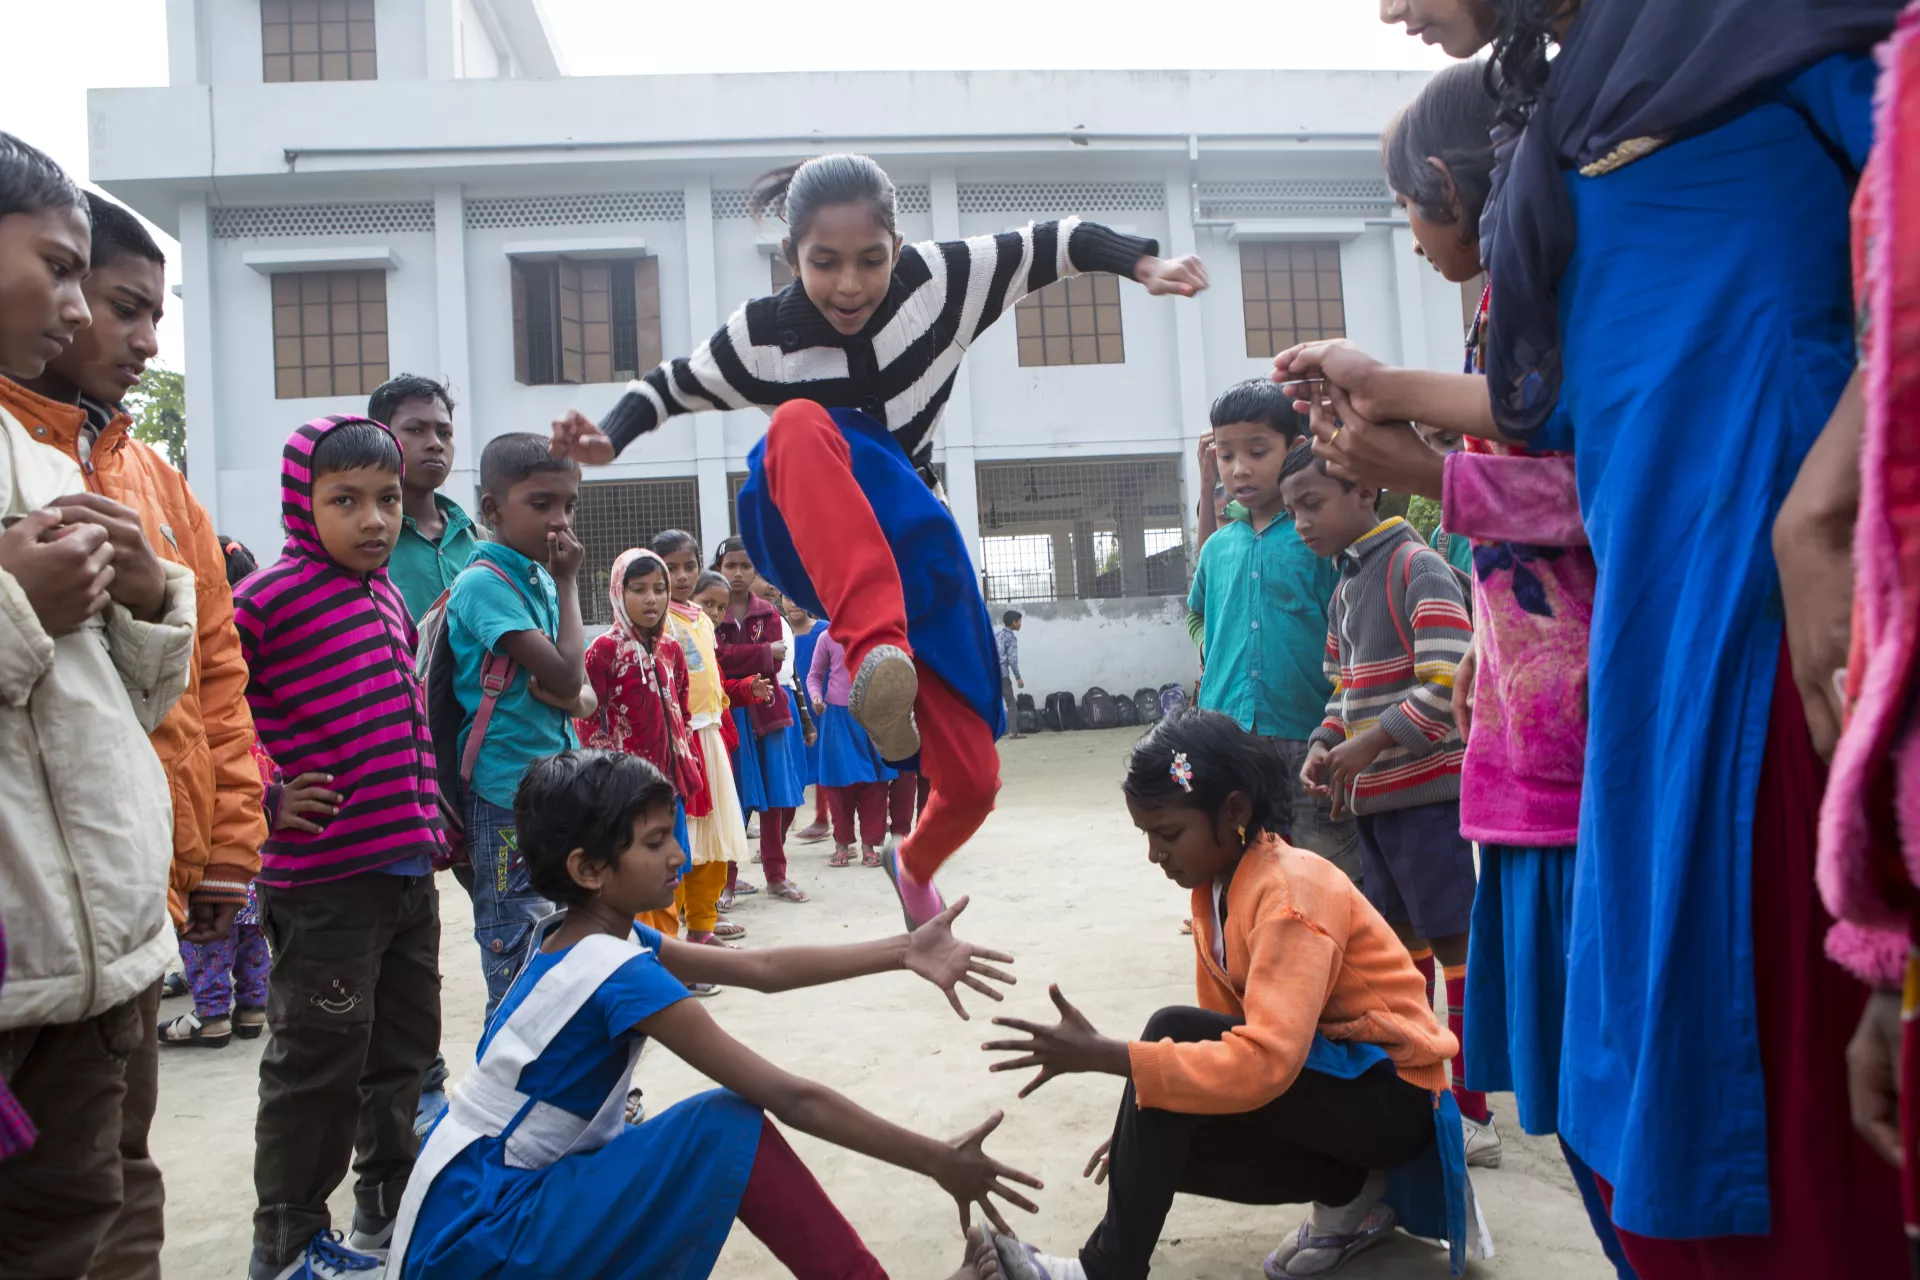 اتفاقية حقوق الطفل: مجموعة من الأطفال يلعبون في ملعب المدرسة في بنغلاديش.